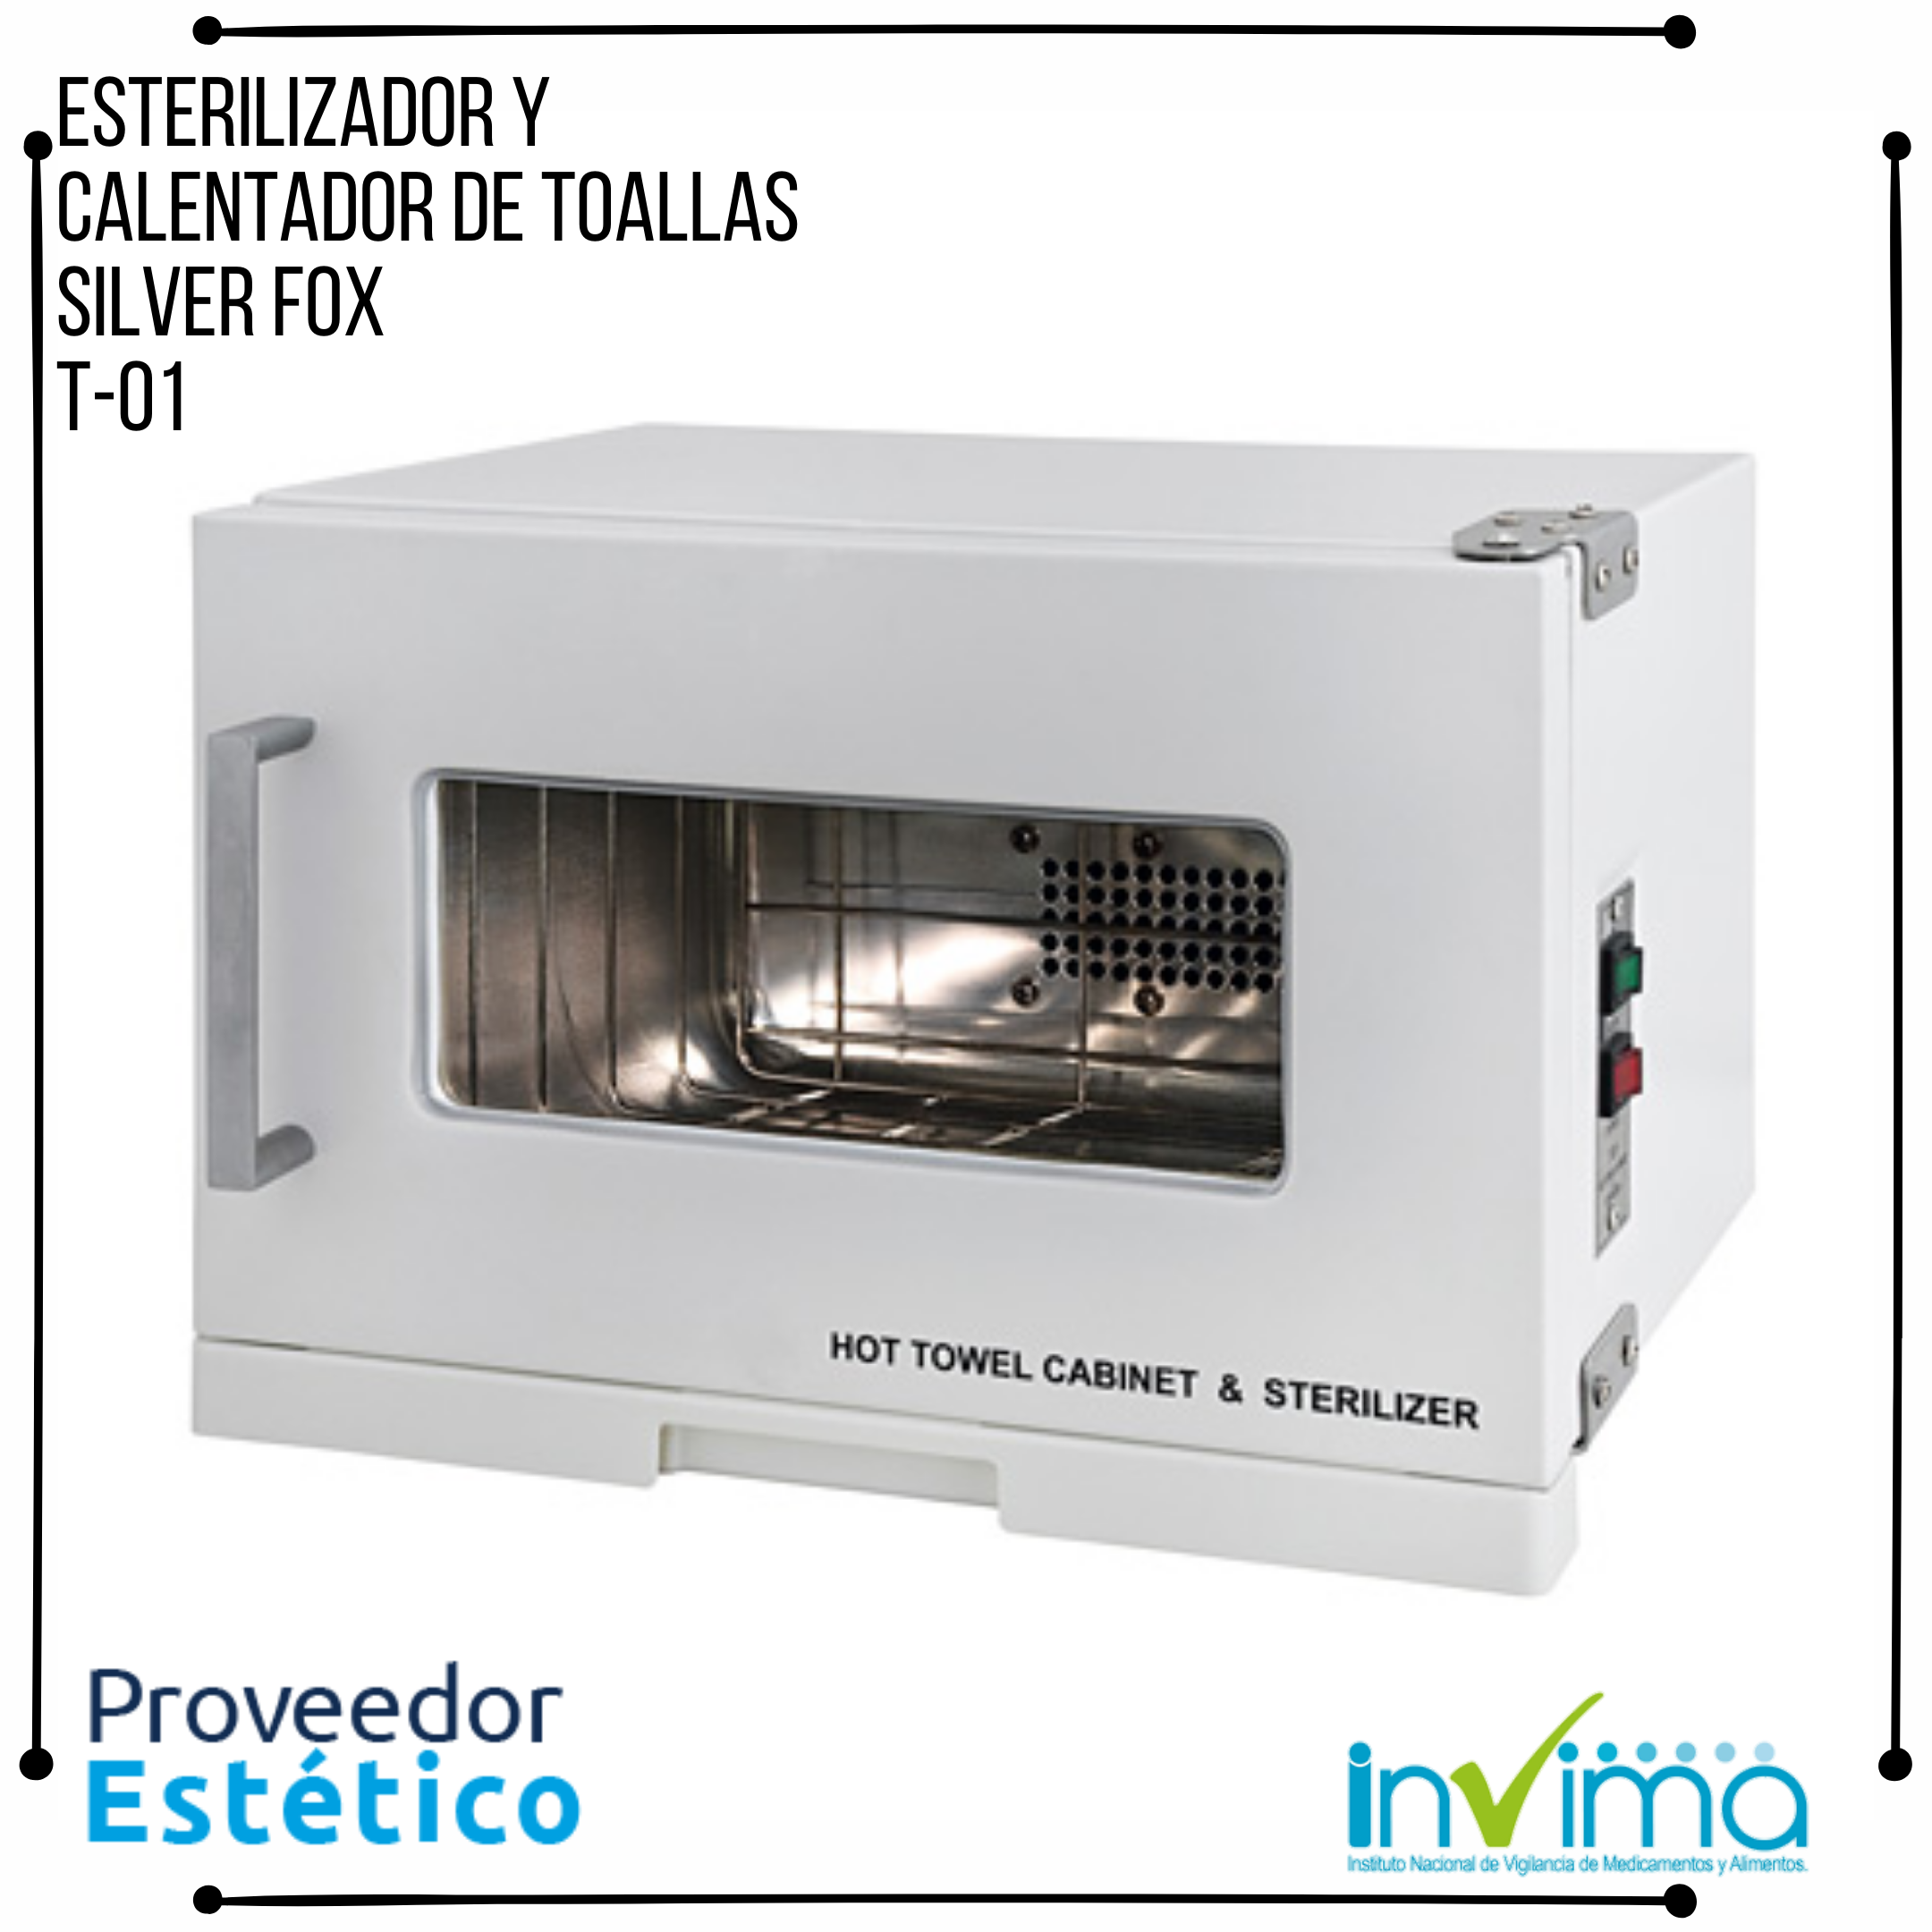 https://0201.nccdn.net/4_2/000/000/01e/20c/esterilizador-y-calentador-de-toallas-silver-fox-t-01.png